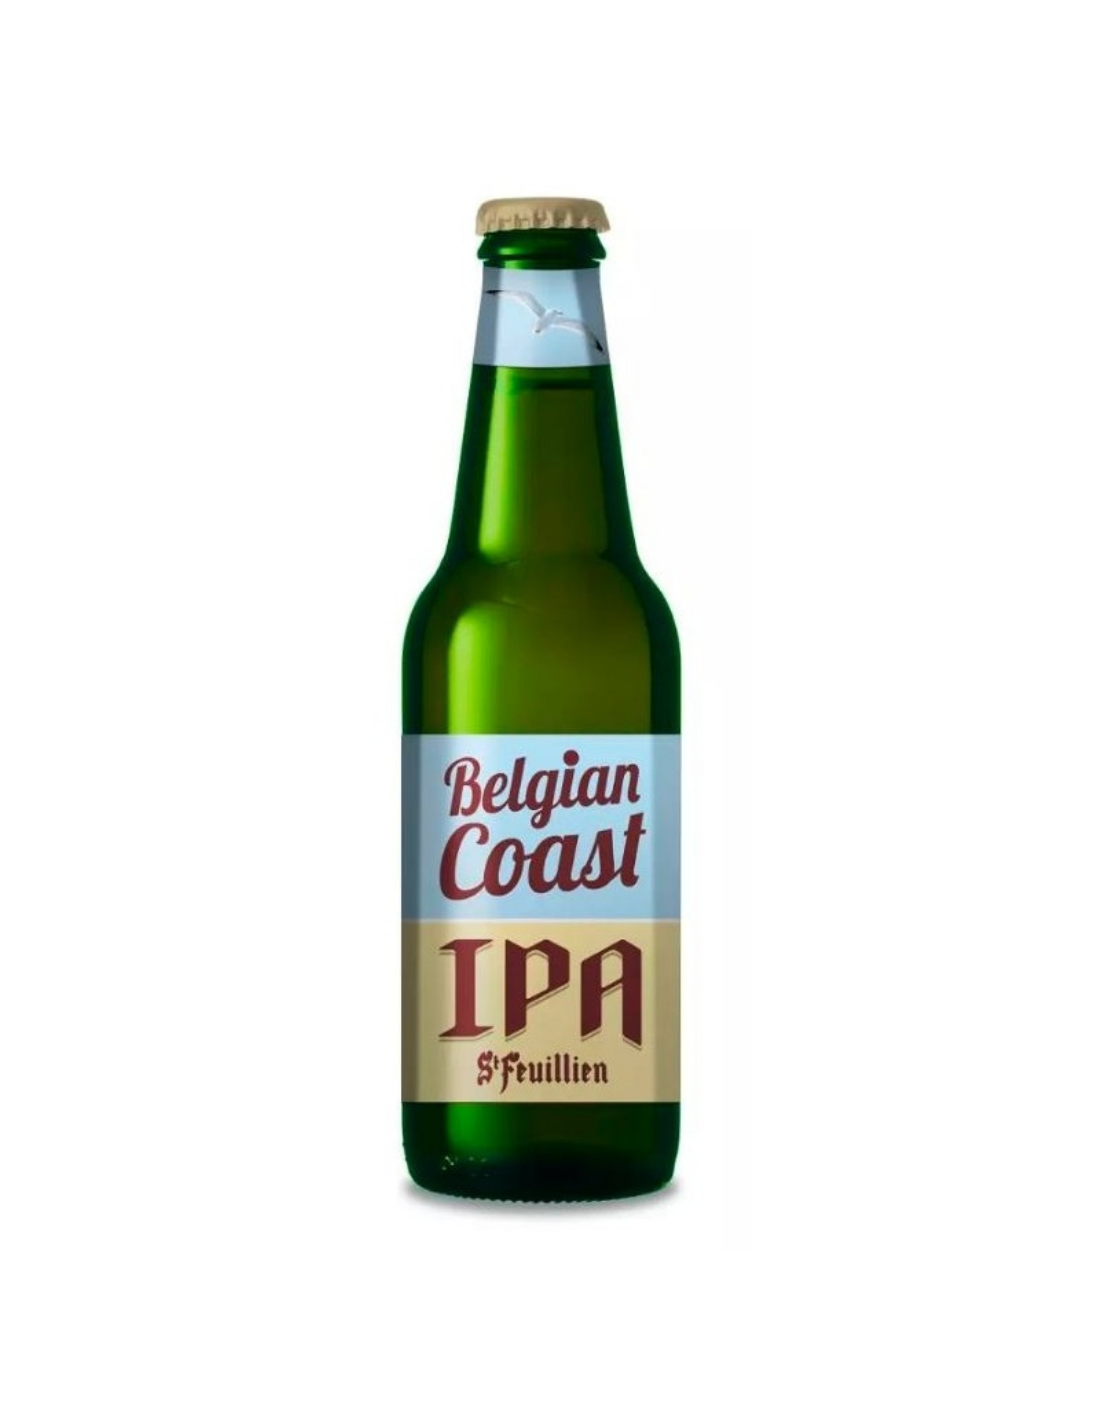 Bere blonda St Feuillien Belgian Coast IPA, 5.5% alc., 0.33L, sticla, Belgia alcooldiscount.ro